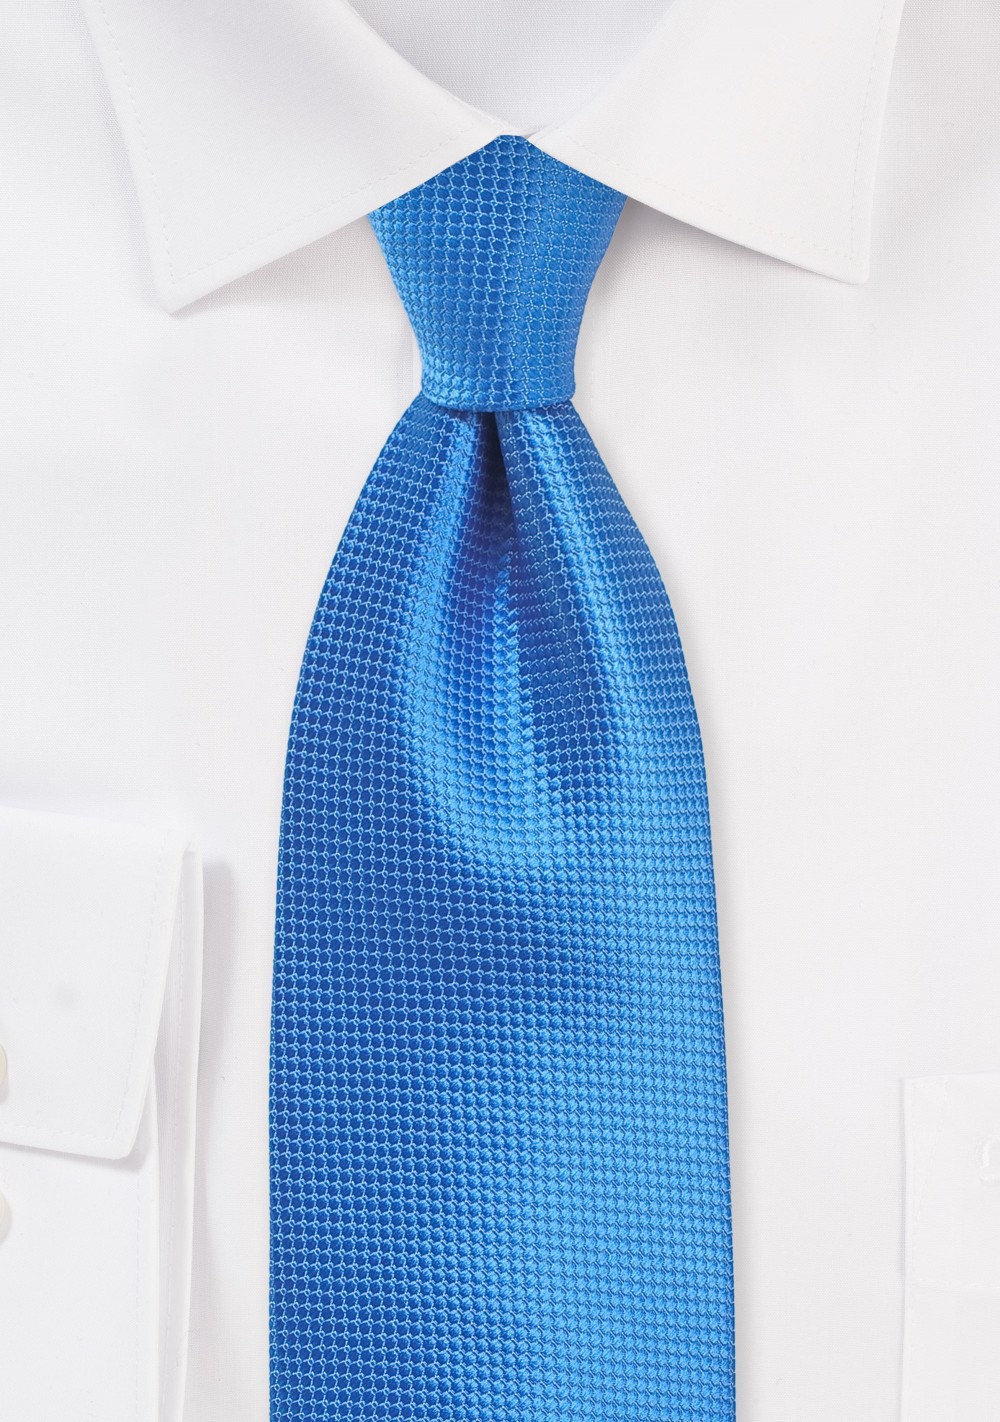 Textured Necktie in French Blue